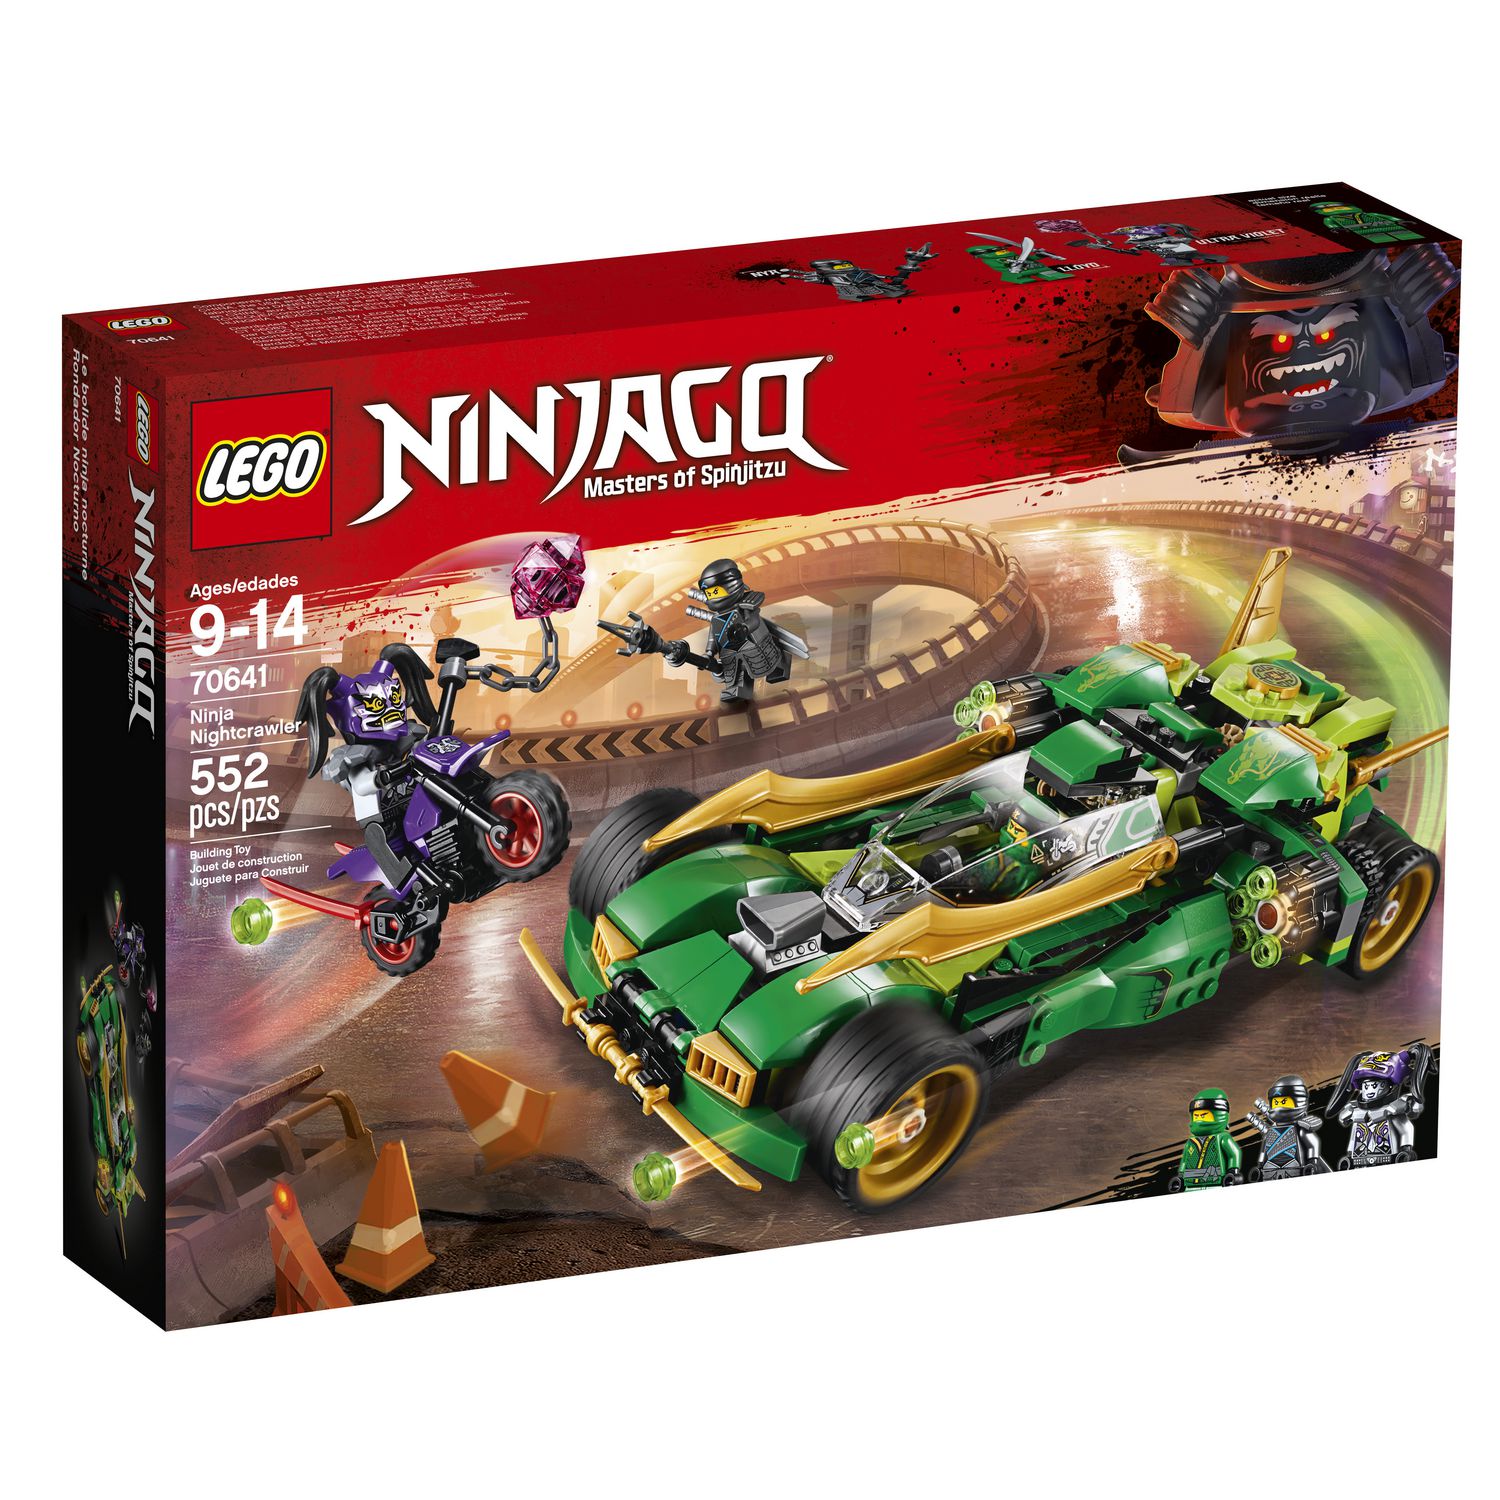 LEGO NINJAGO Ninja Nightcrawler 70641 Building Kit (552 Piece